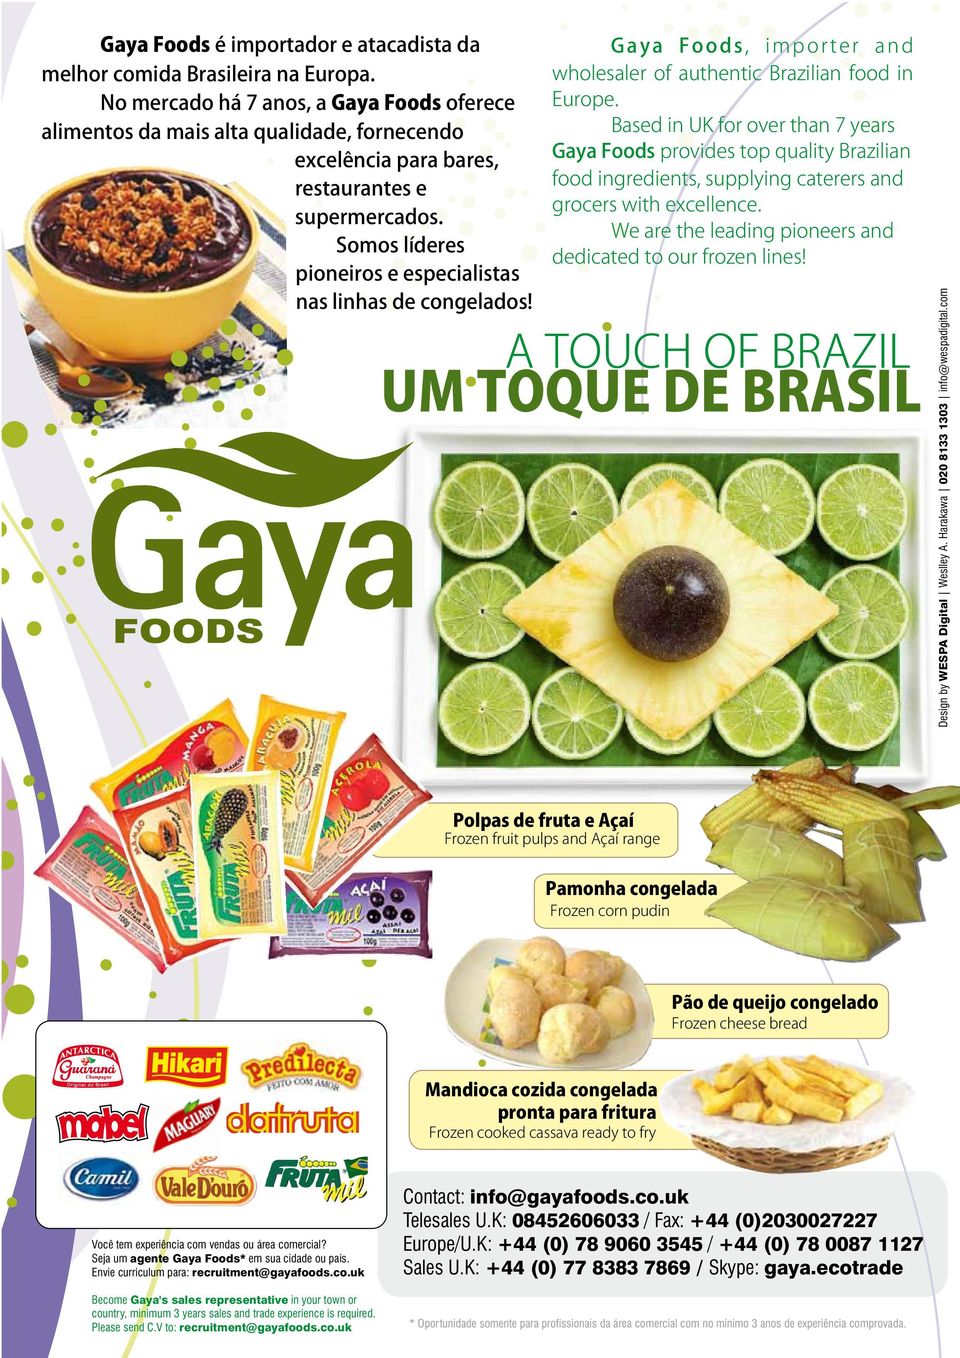 Somos líderes pioneiros e especialistas nas linhas de congelados! G a y a F o o d s, i m p o r t e r a n d wholesaler of authentic Brazilian food in Europe.